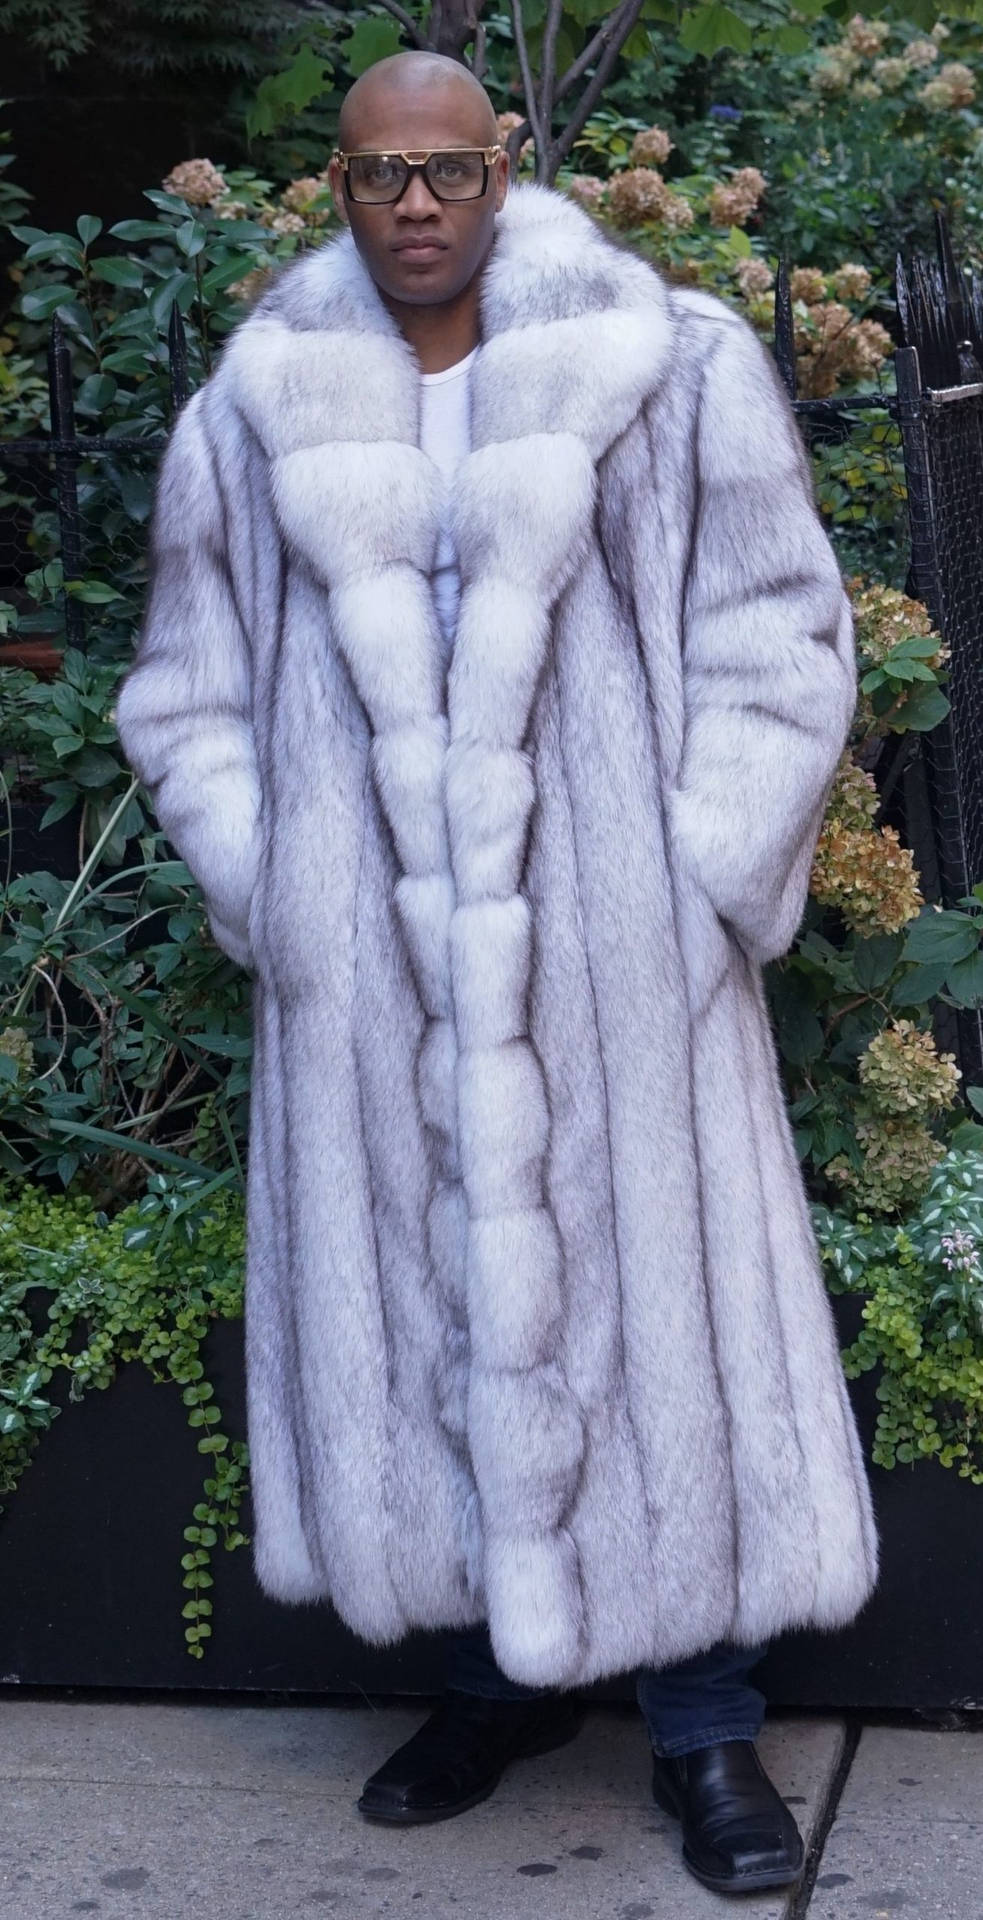 Long Animal Fur Coat Wallpaper